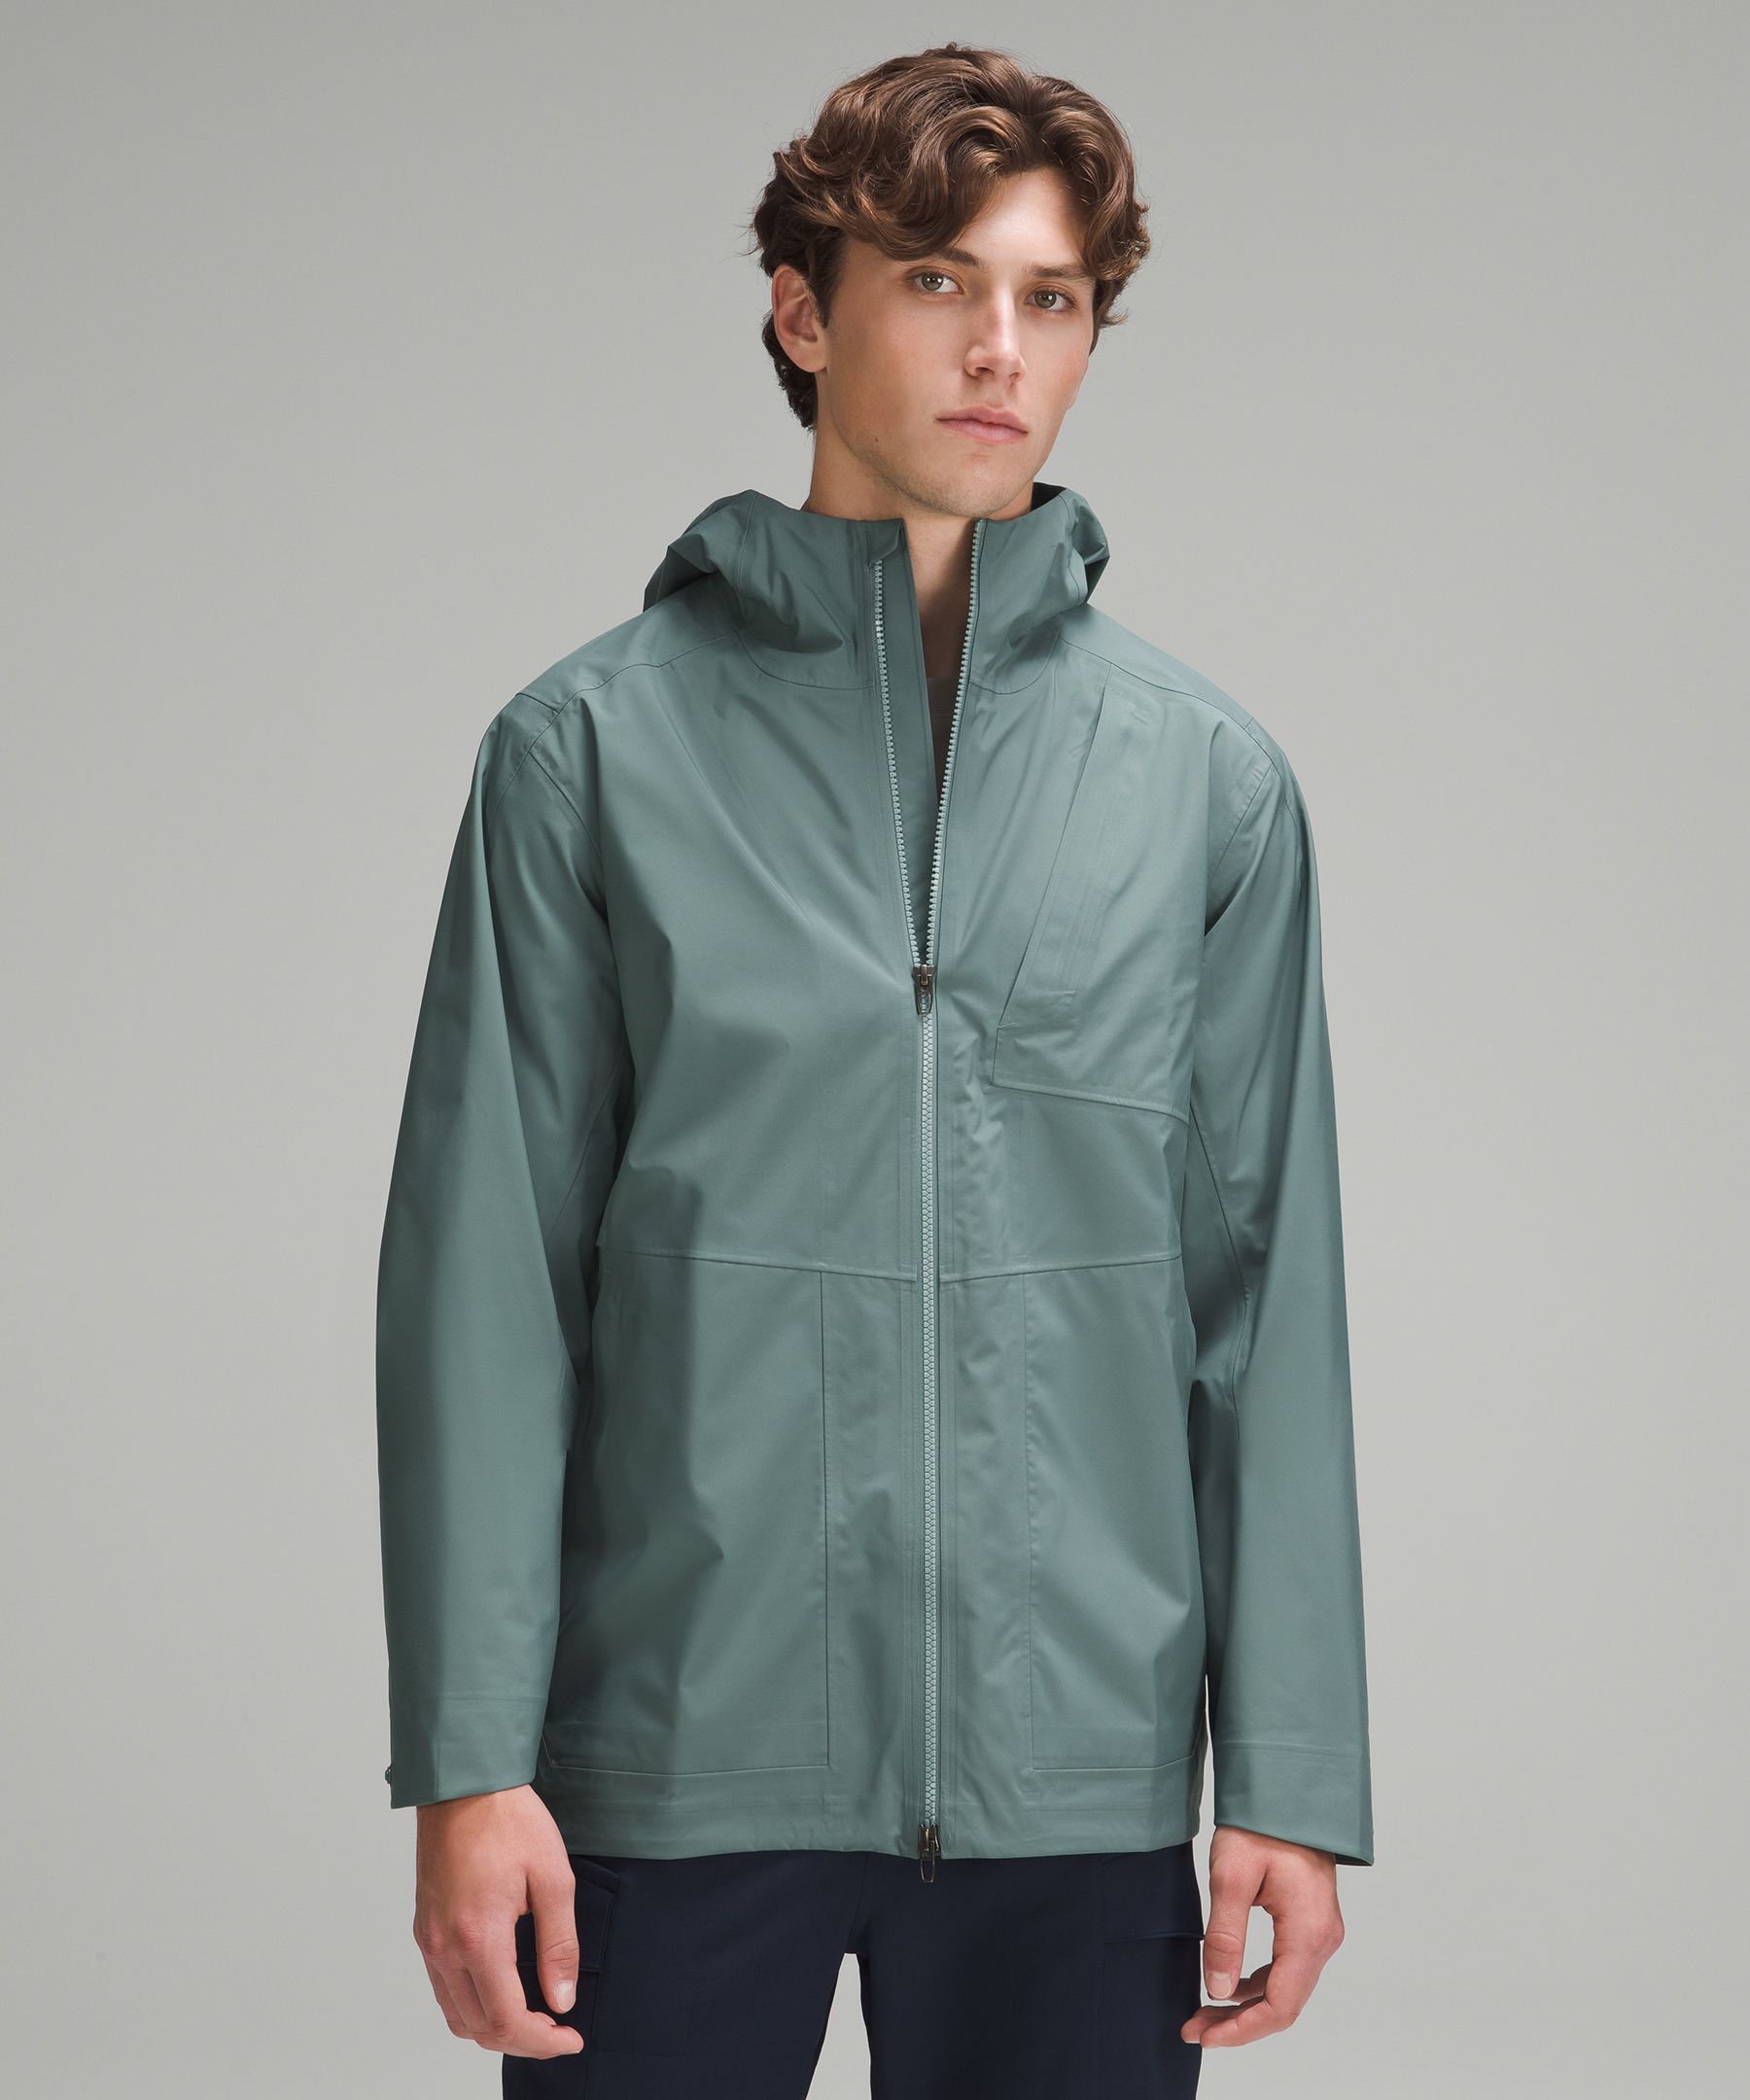 Waterproof Full-Zip Rain Jacket, Men's Coats & Jackets